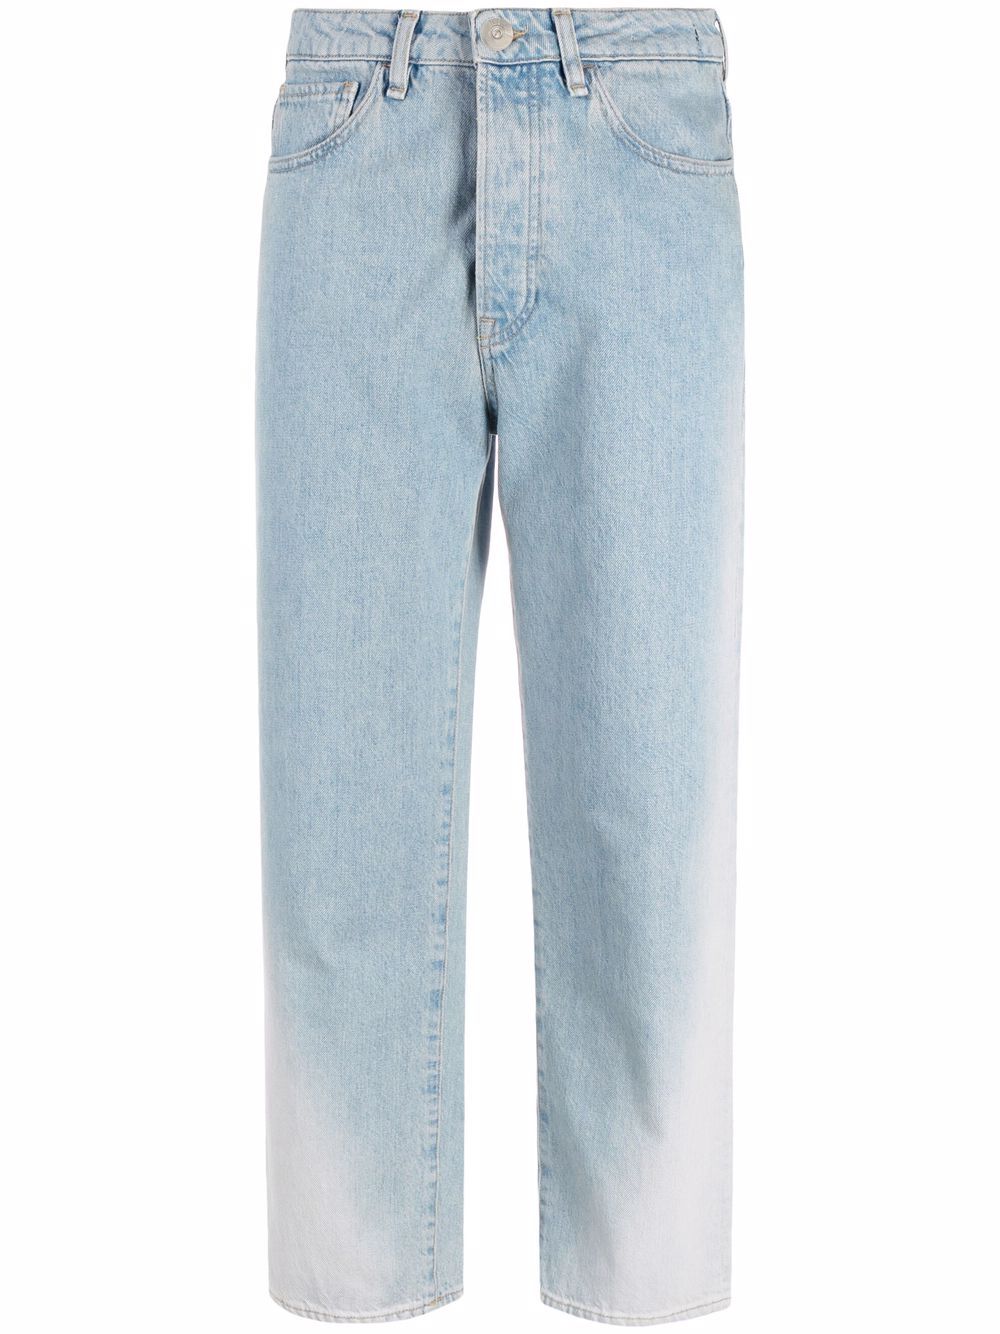 фото 3x1 прямые джинсы с прорезями